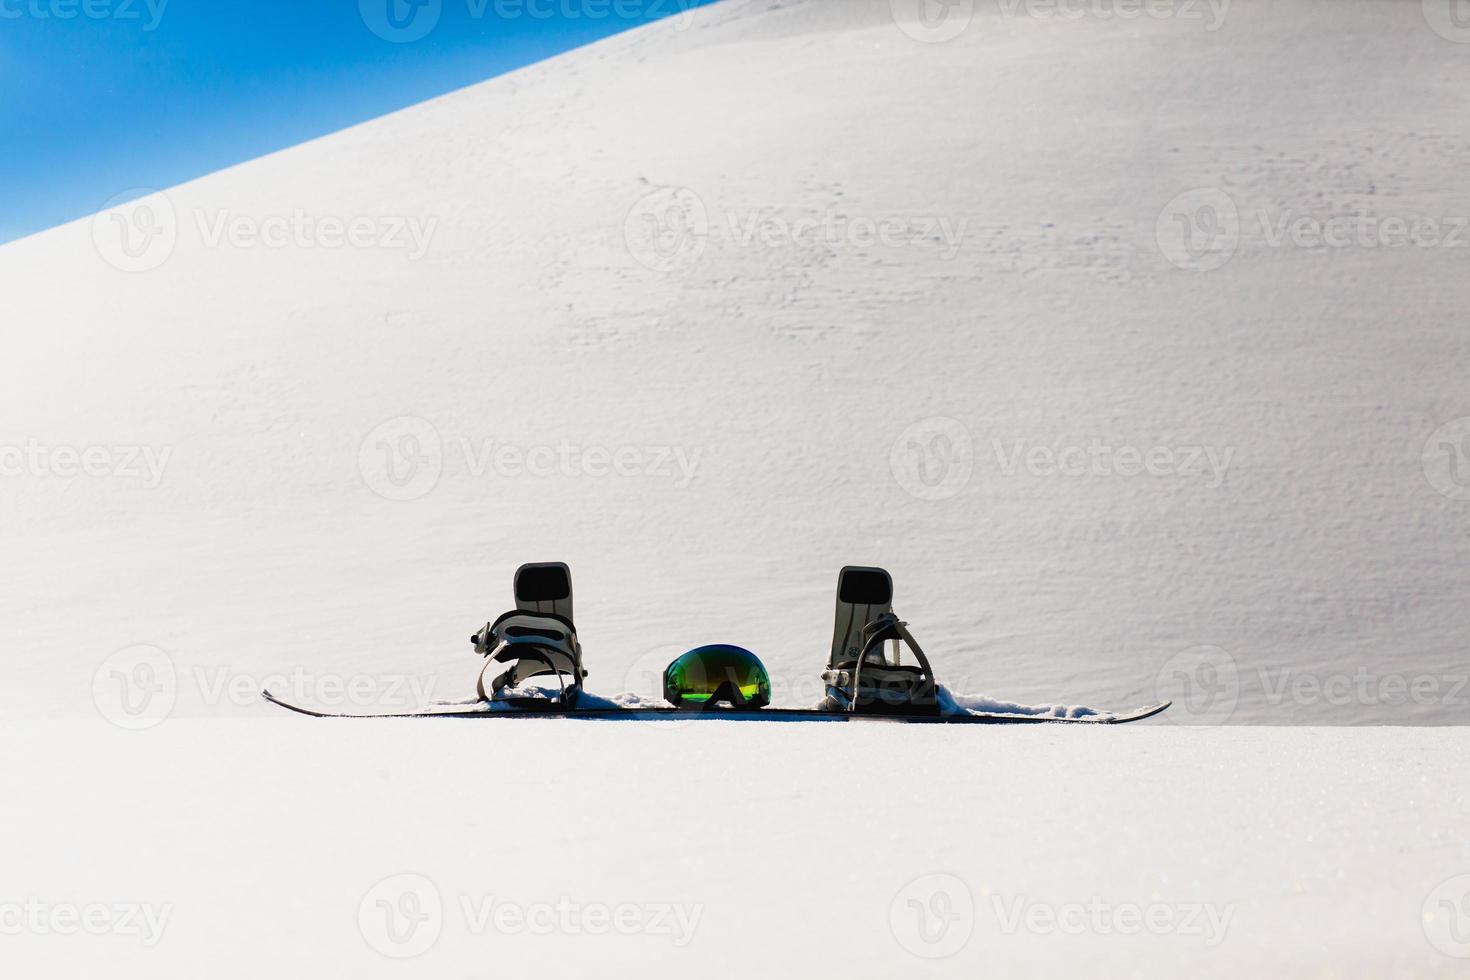 Gafas de snowboard y esquí tendido sobre la nieve cerca de la pista de freeride foto